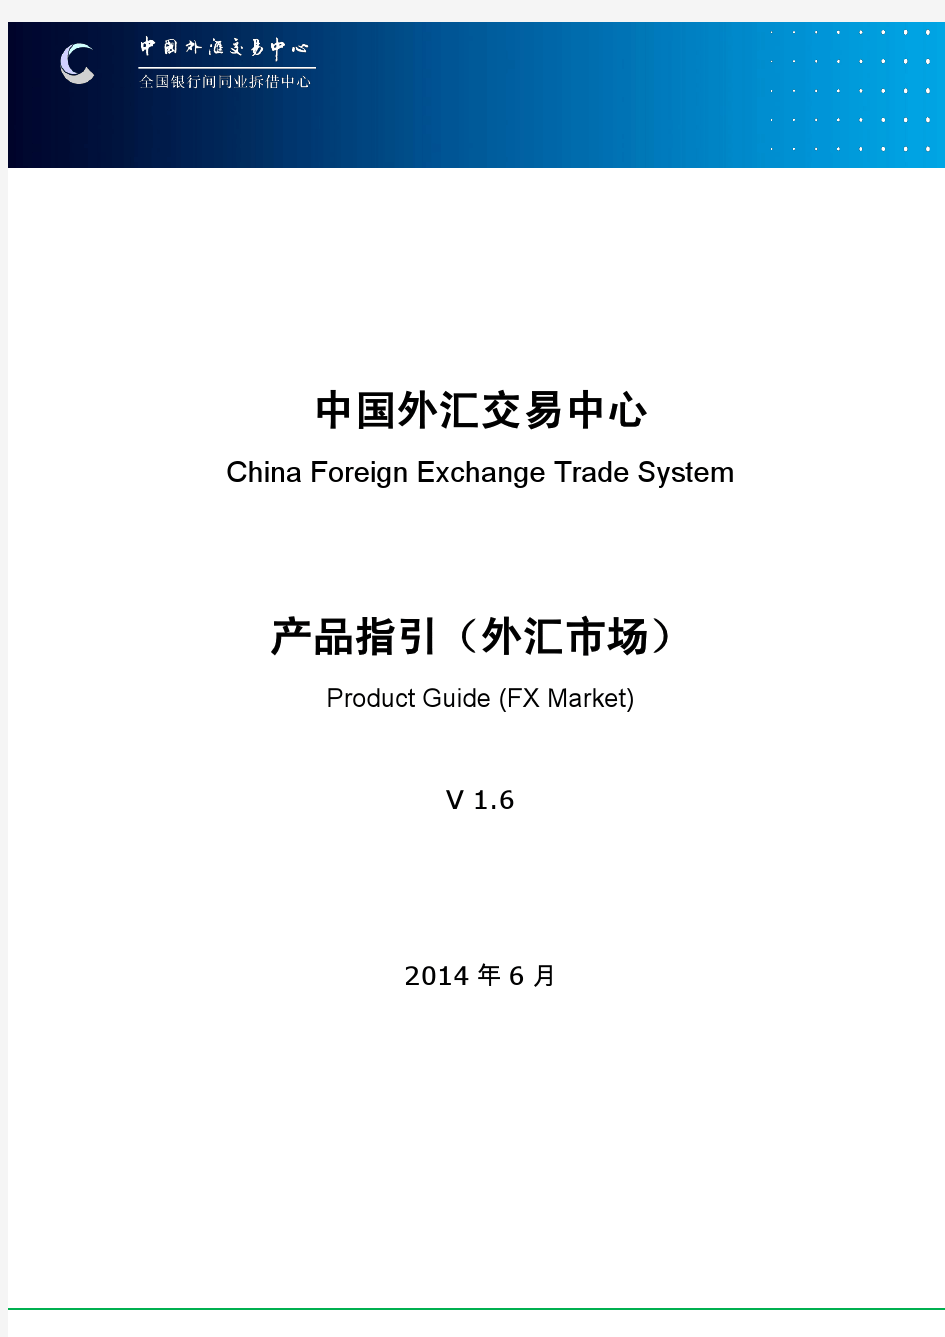 中国外汇交易中心产品指引(外汇市场)V1.6